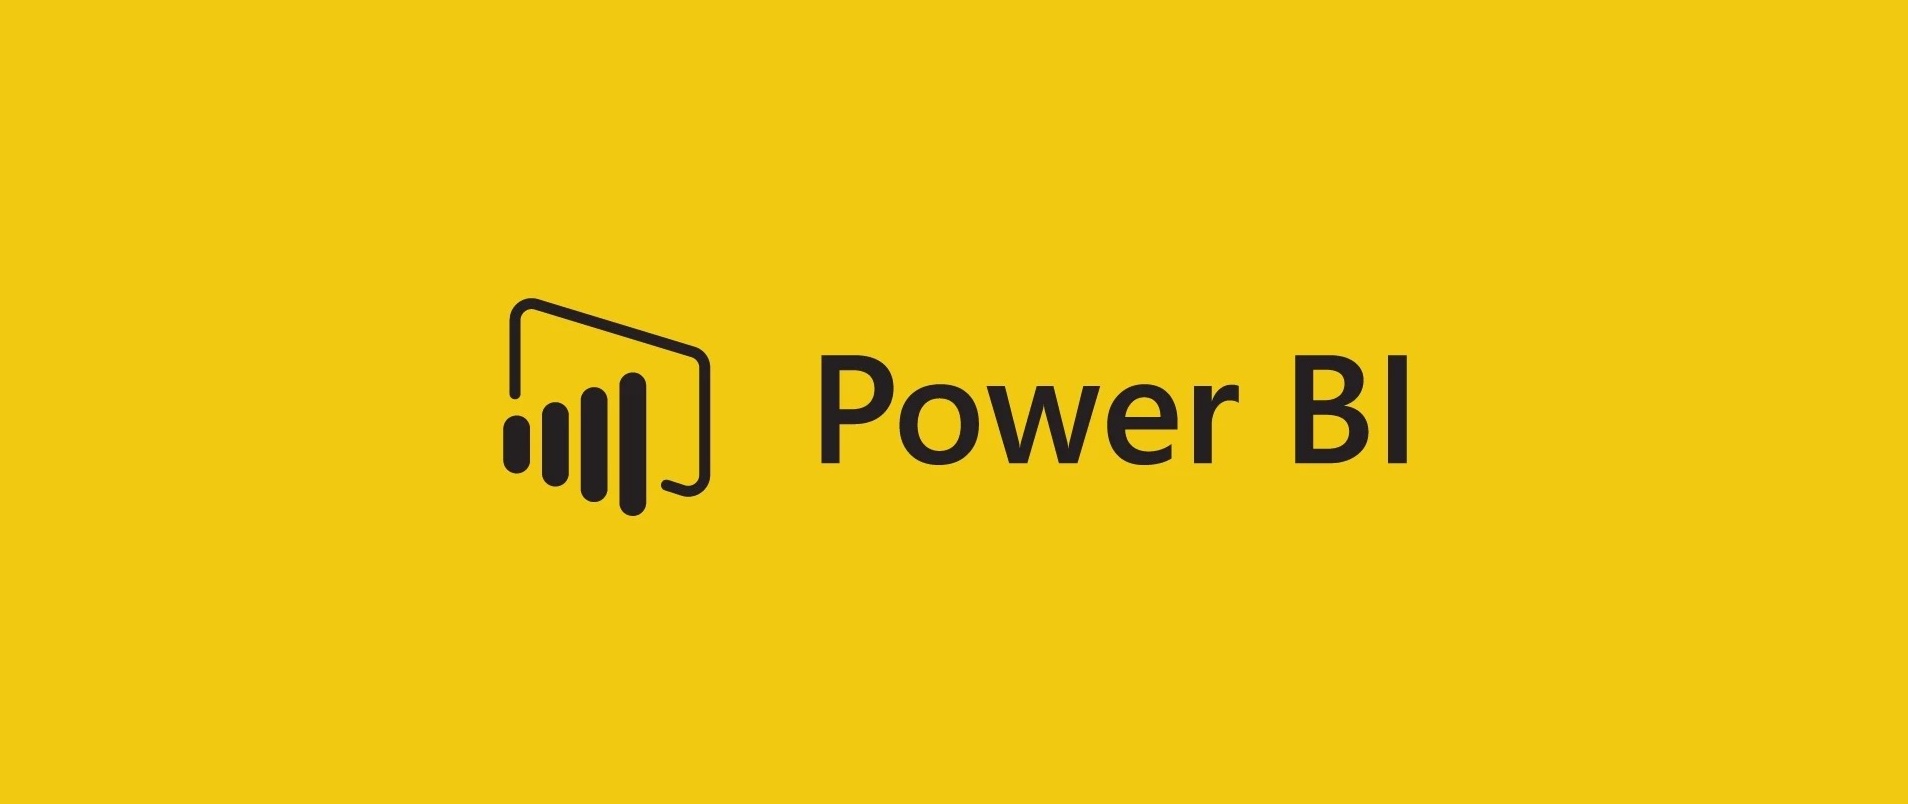 Power bi download